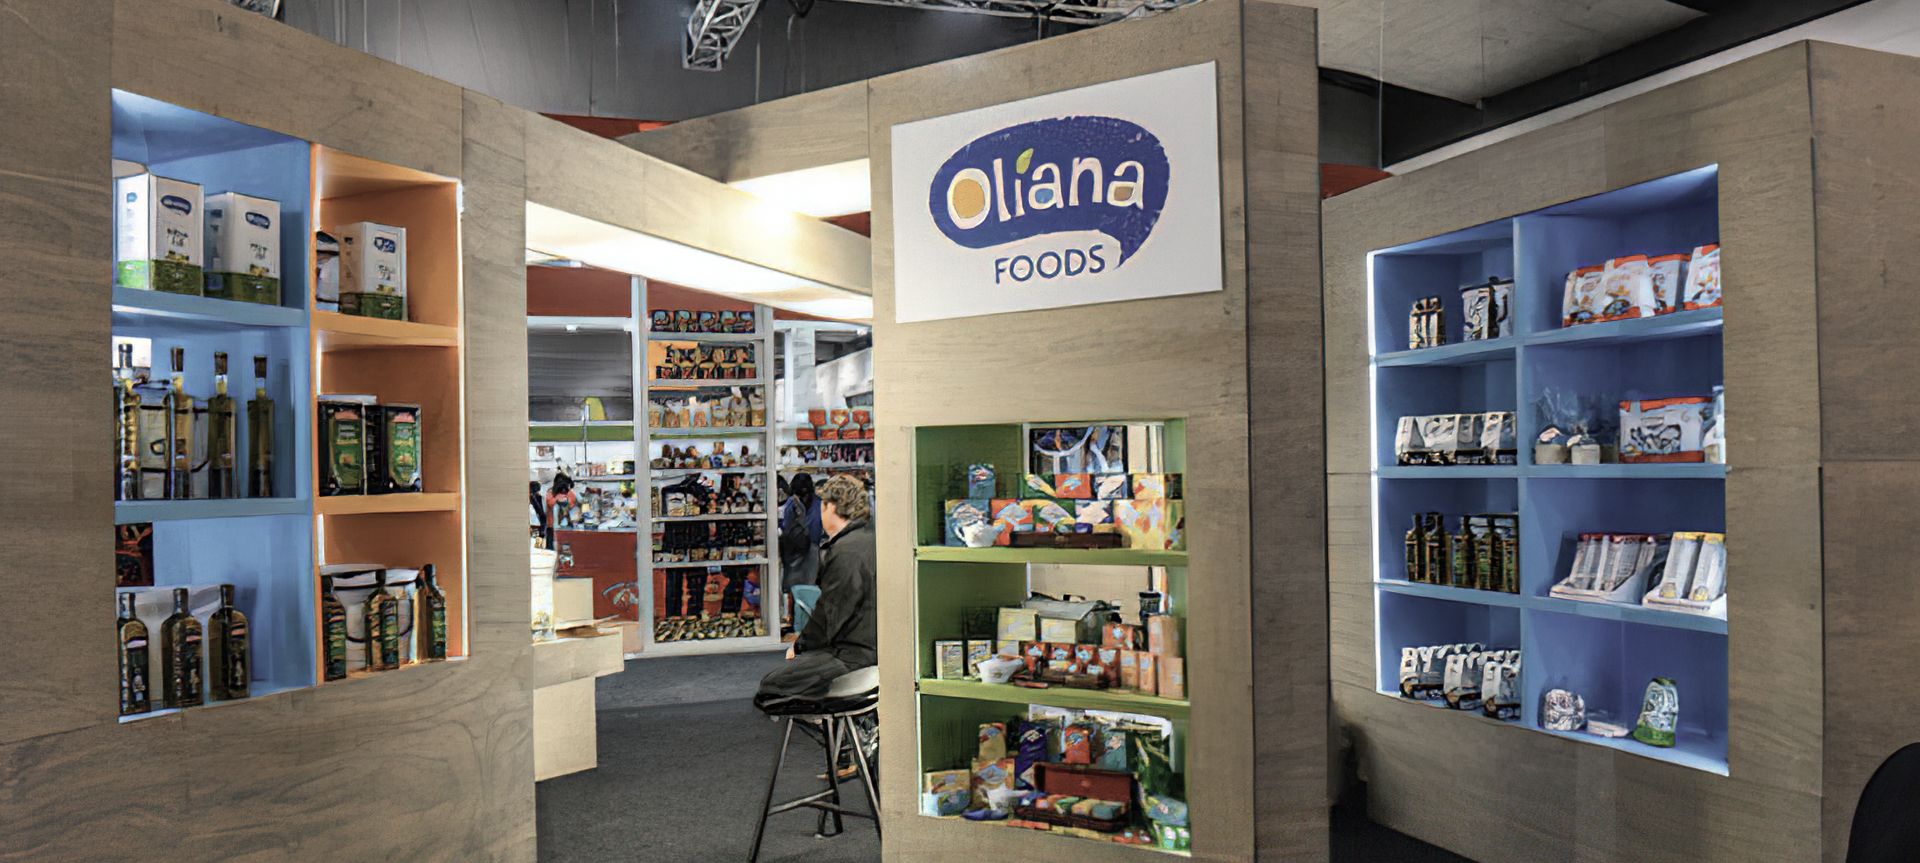 Oliana - Food banner